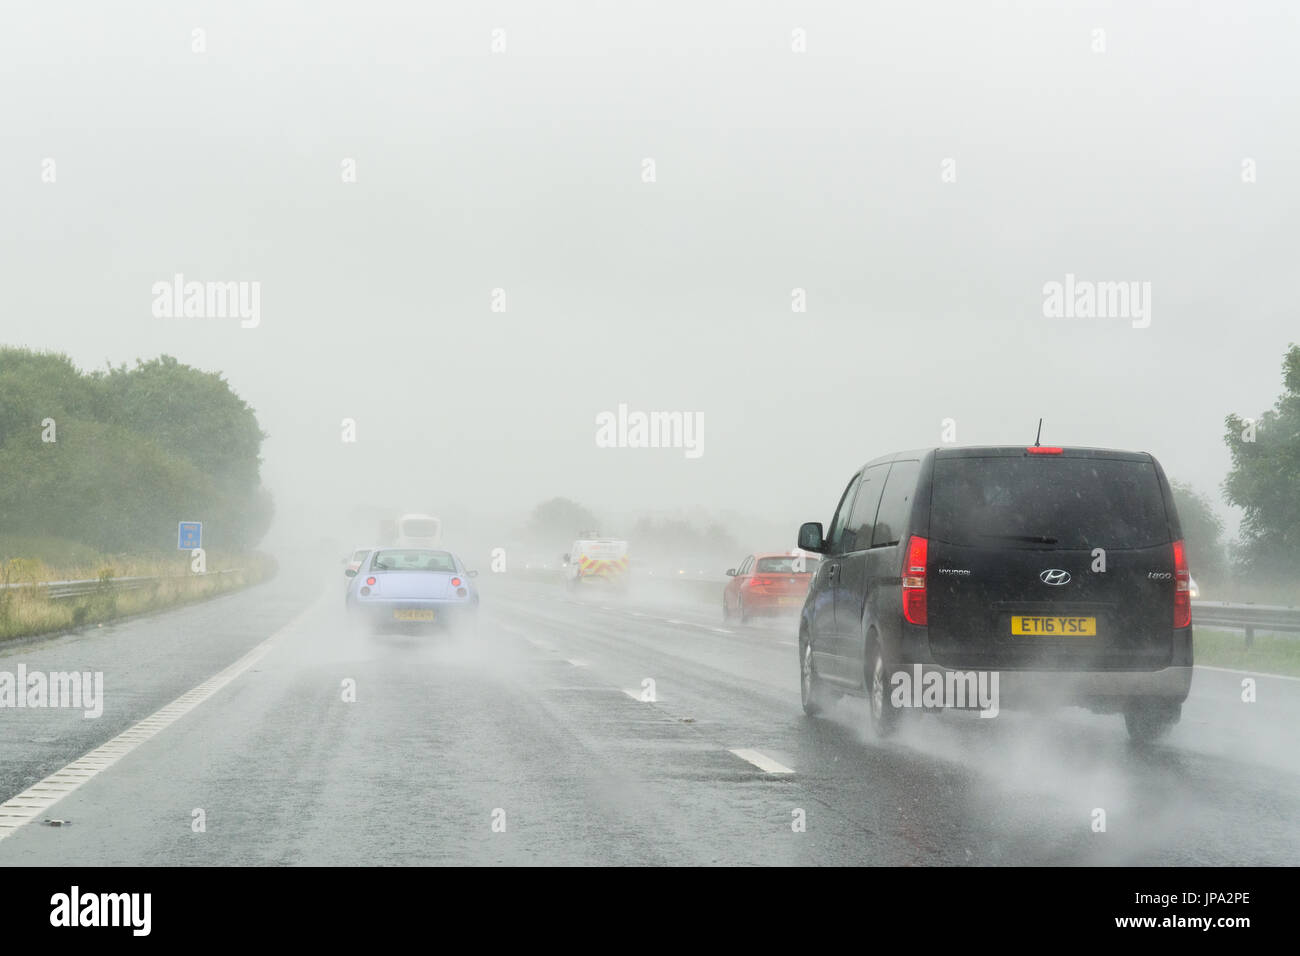 Une faible visibilité sur l'autoroute britannique en raison de l'eau de surface après de fortes pluies Banque D'Images